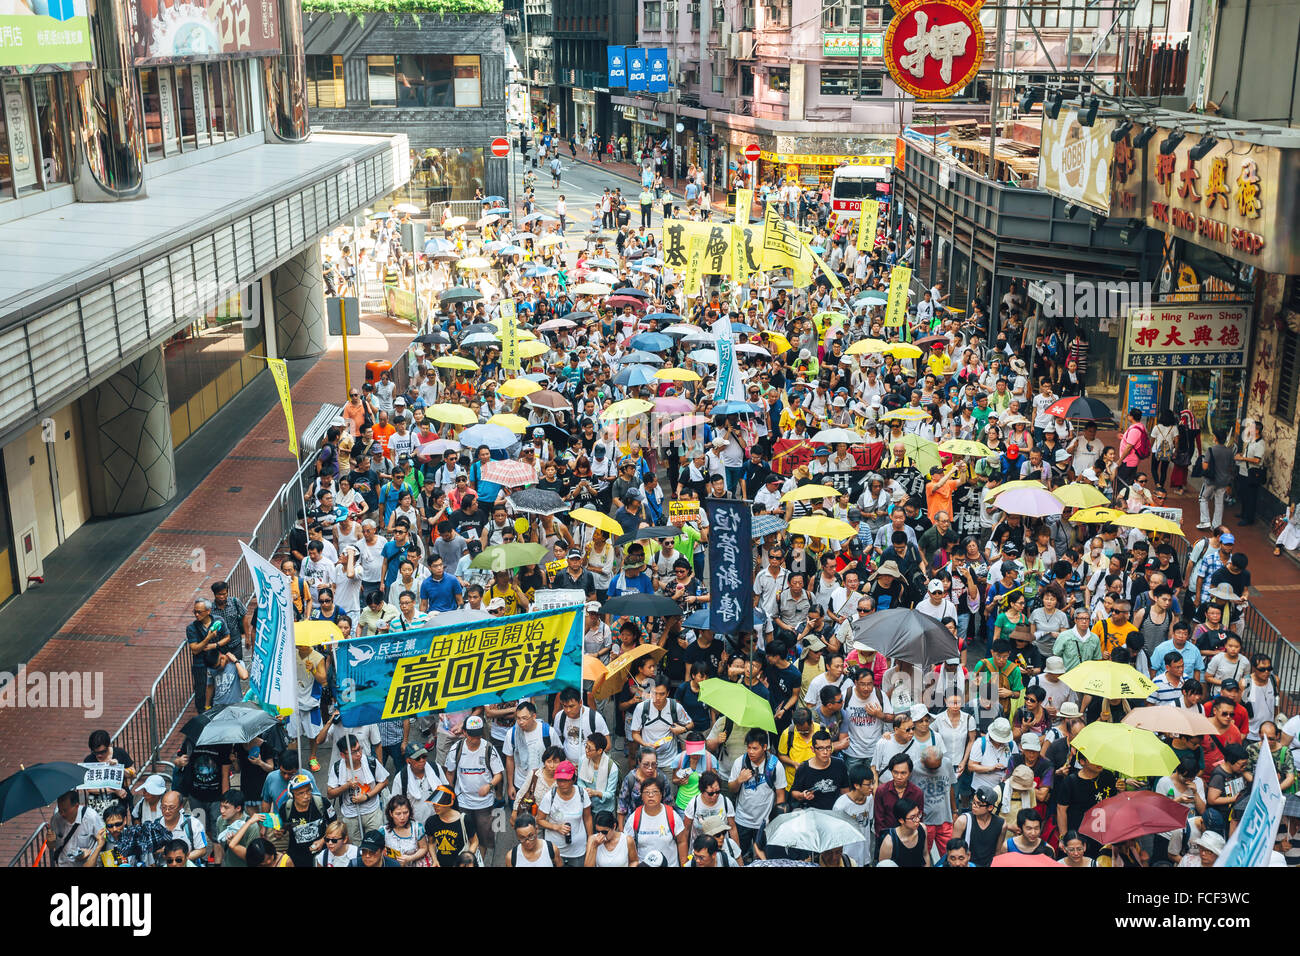 HONG KONG - 1 de julio: Hong Kong las personas buscan una mayor democracia como frustración crece sobre la influencia de Beijing el 1 de julio de 2015. Foto de stock